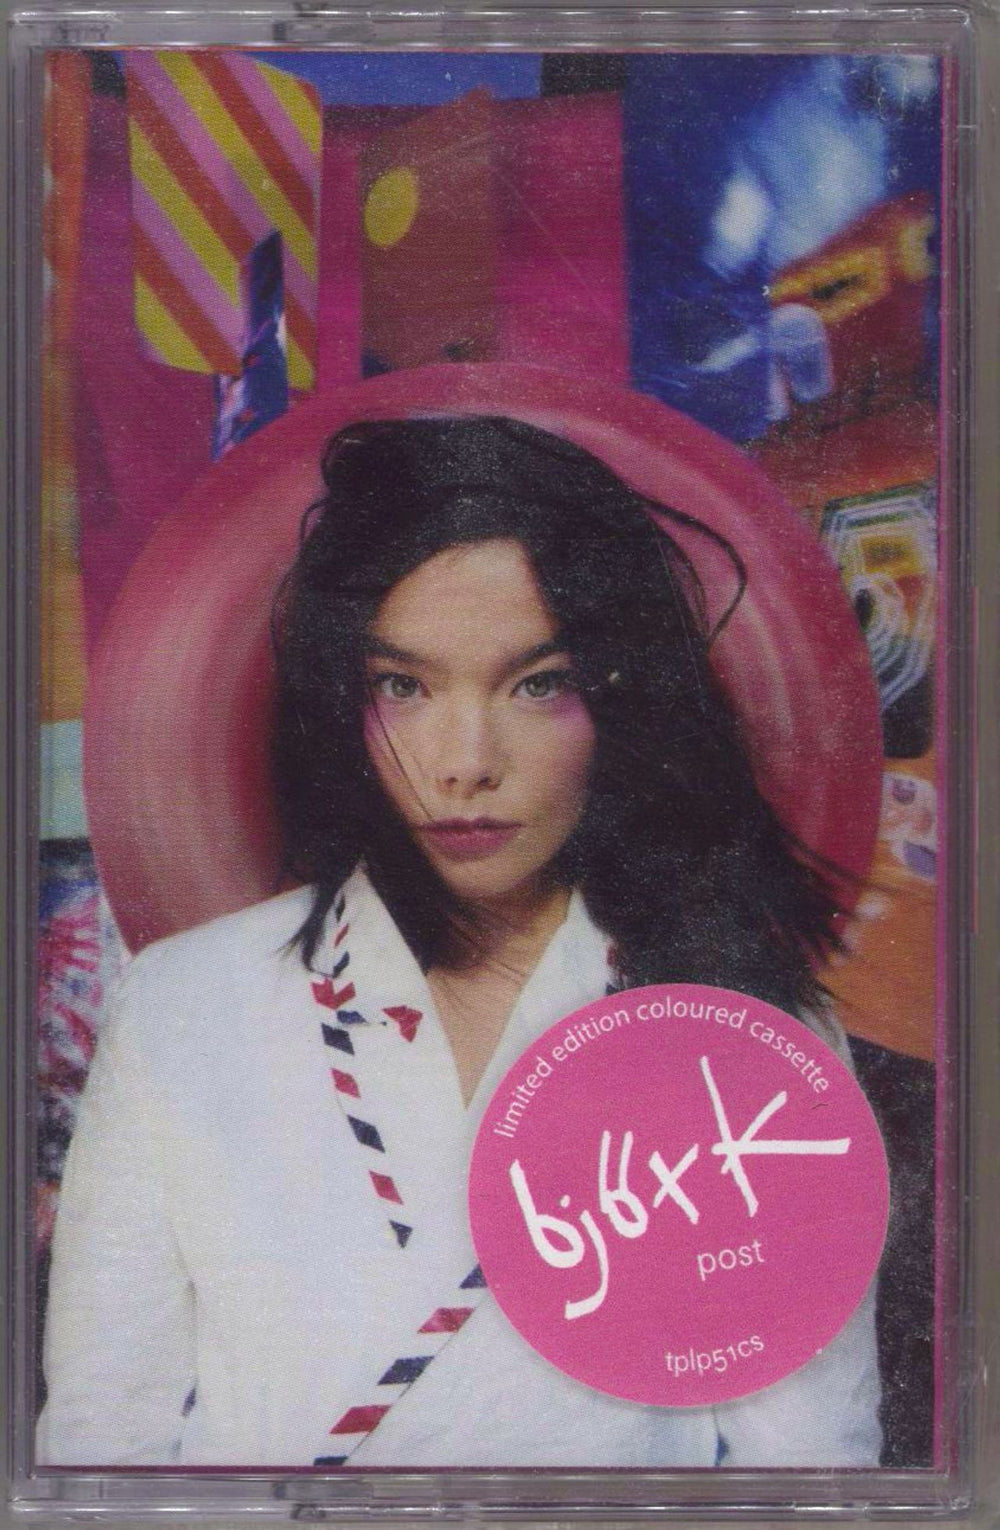 Björk Post - Pink - Sealed UK cassette album TPLP51CS